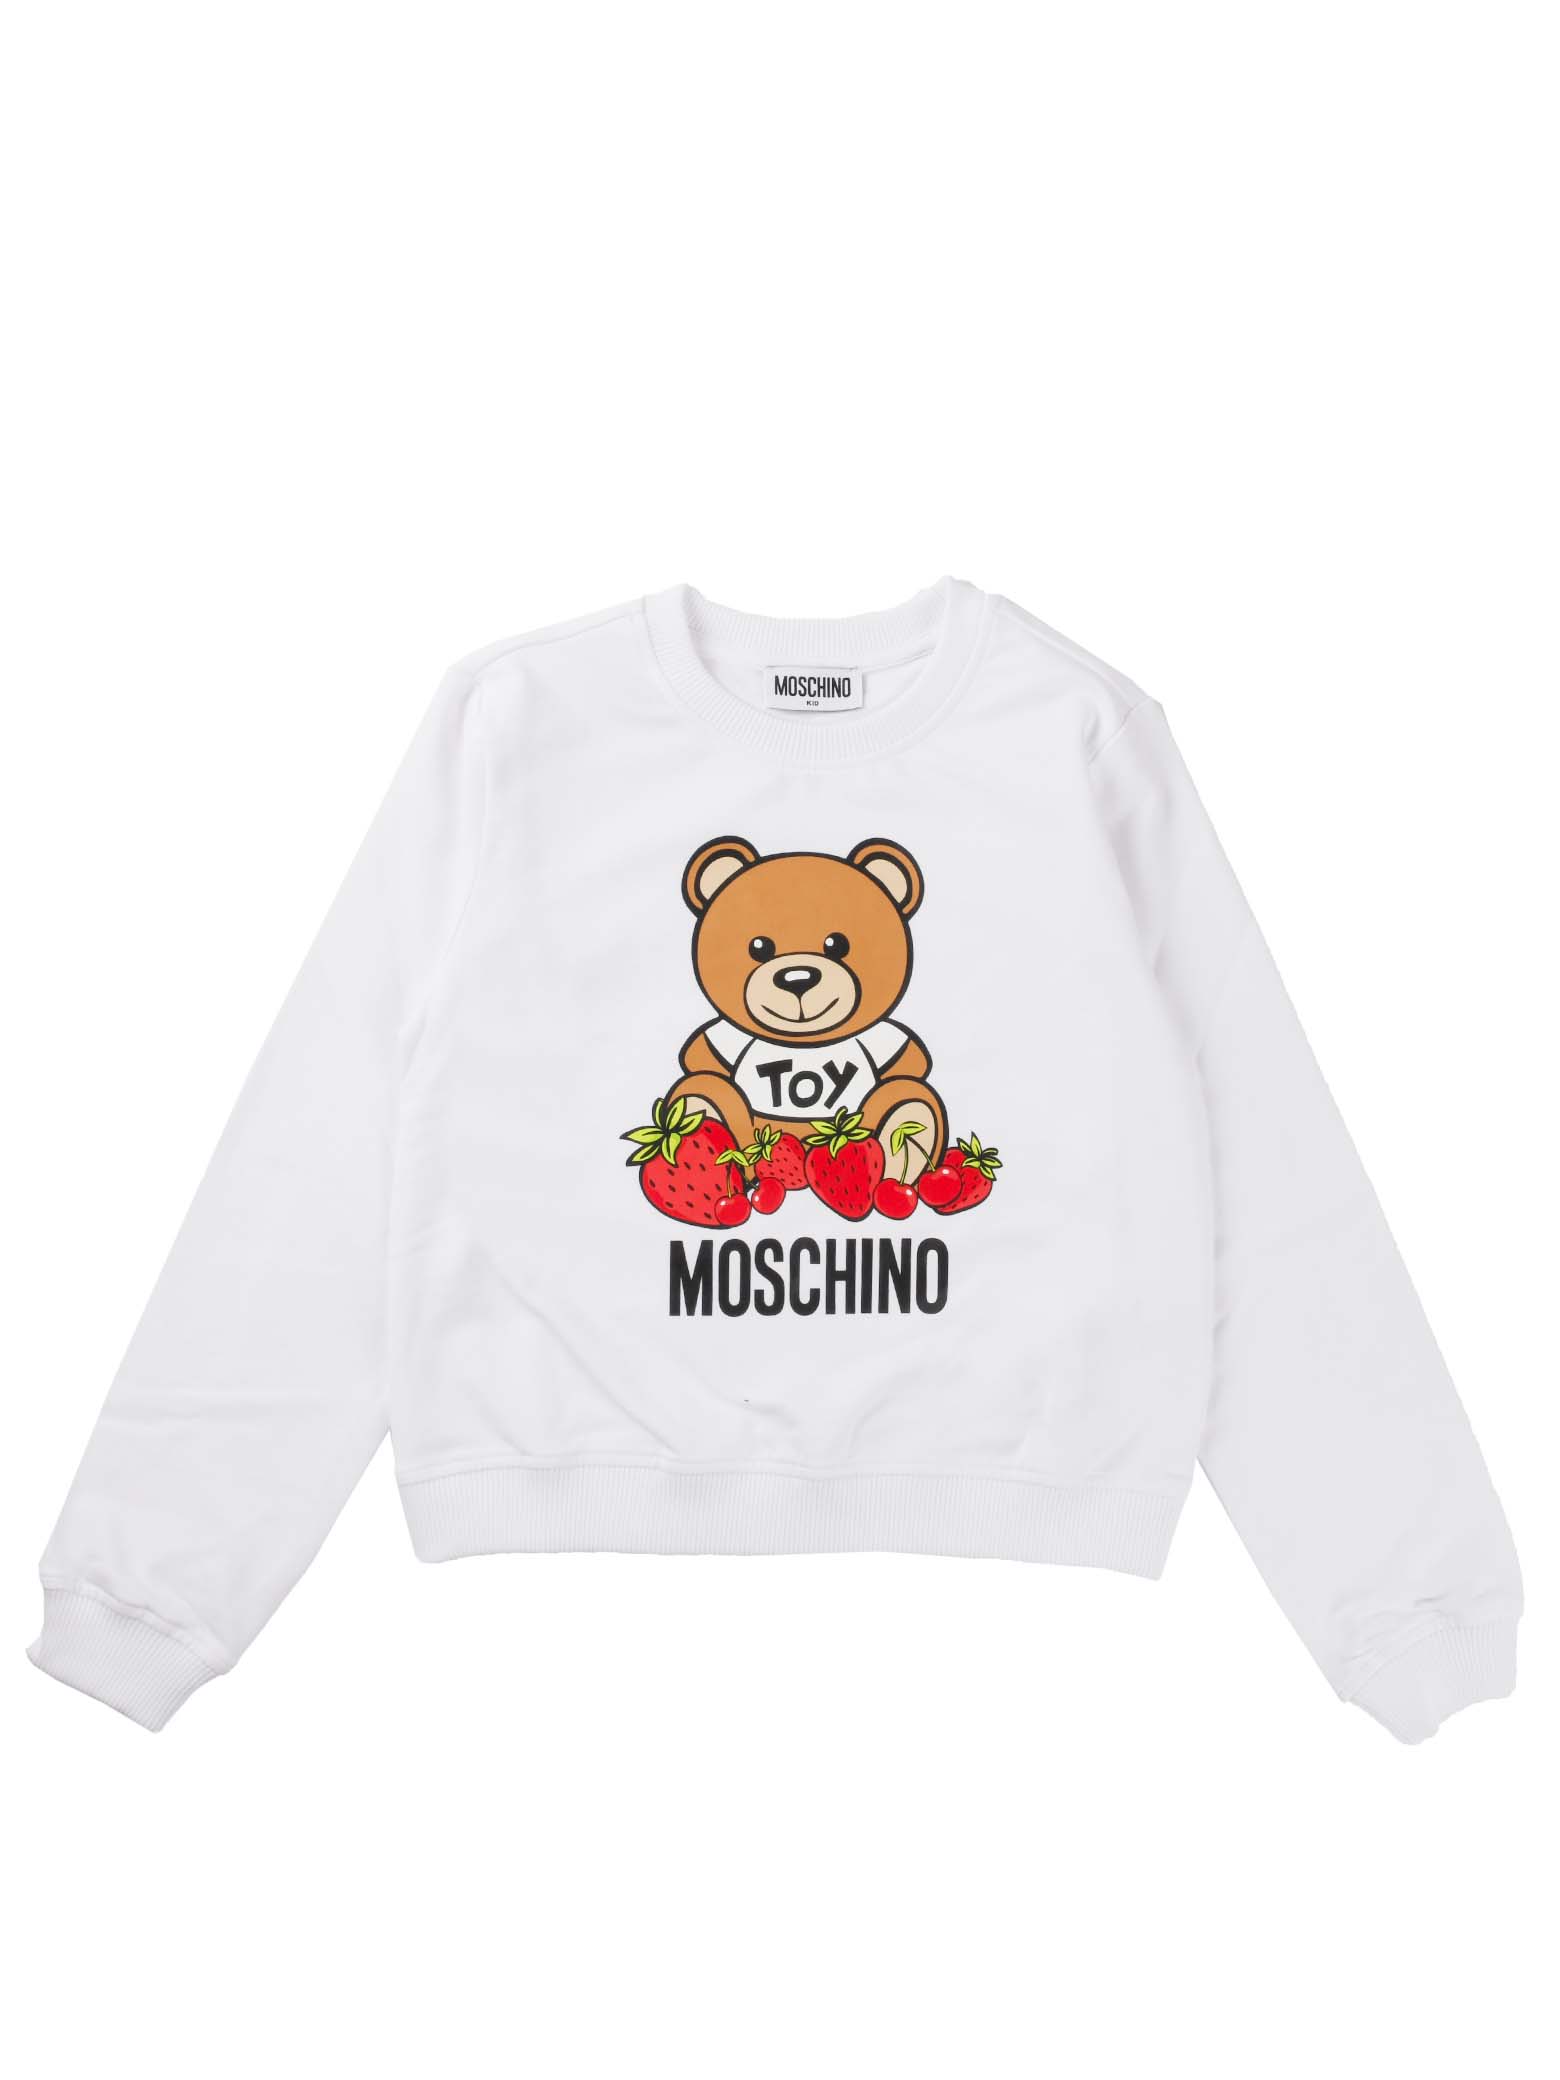 Moschino White Sweatshirt With Bear And Strawberry Print